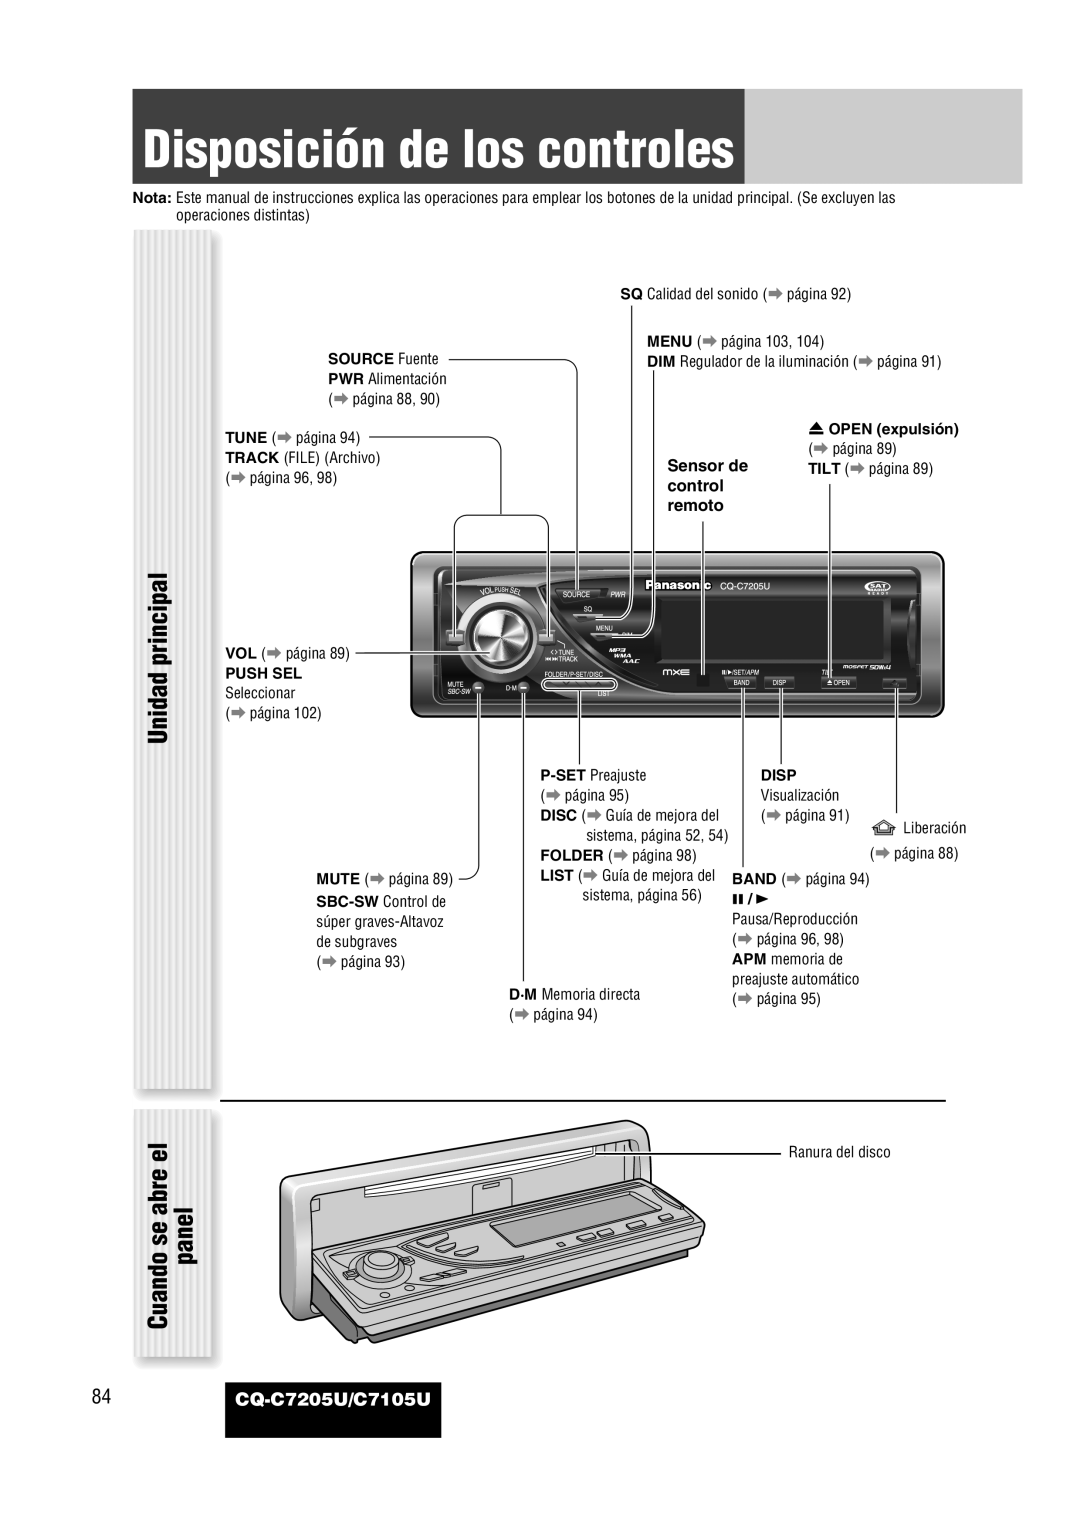 Panasonic warranty Disposición de los controles, Unidad principal Cuando se abre el, panel, 84CQ-C7205U/C7105U 